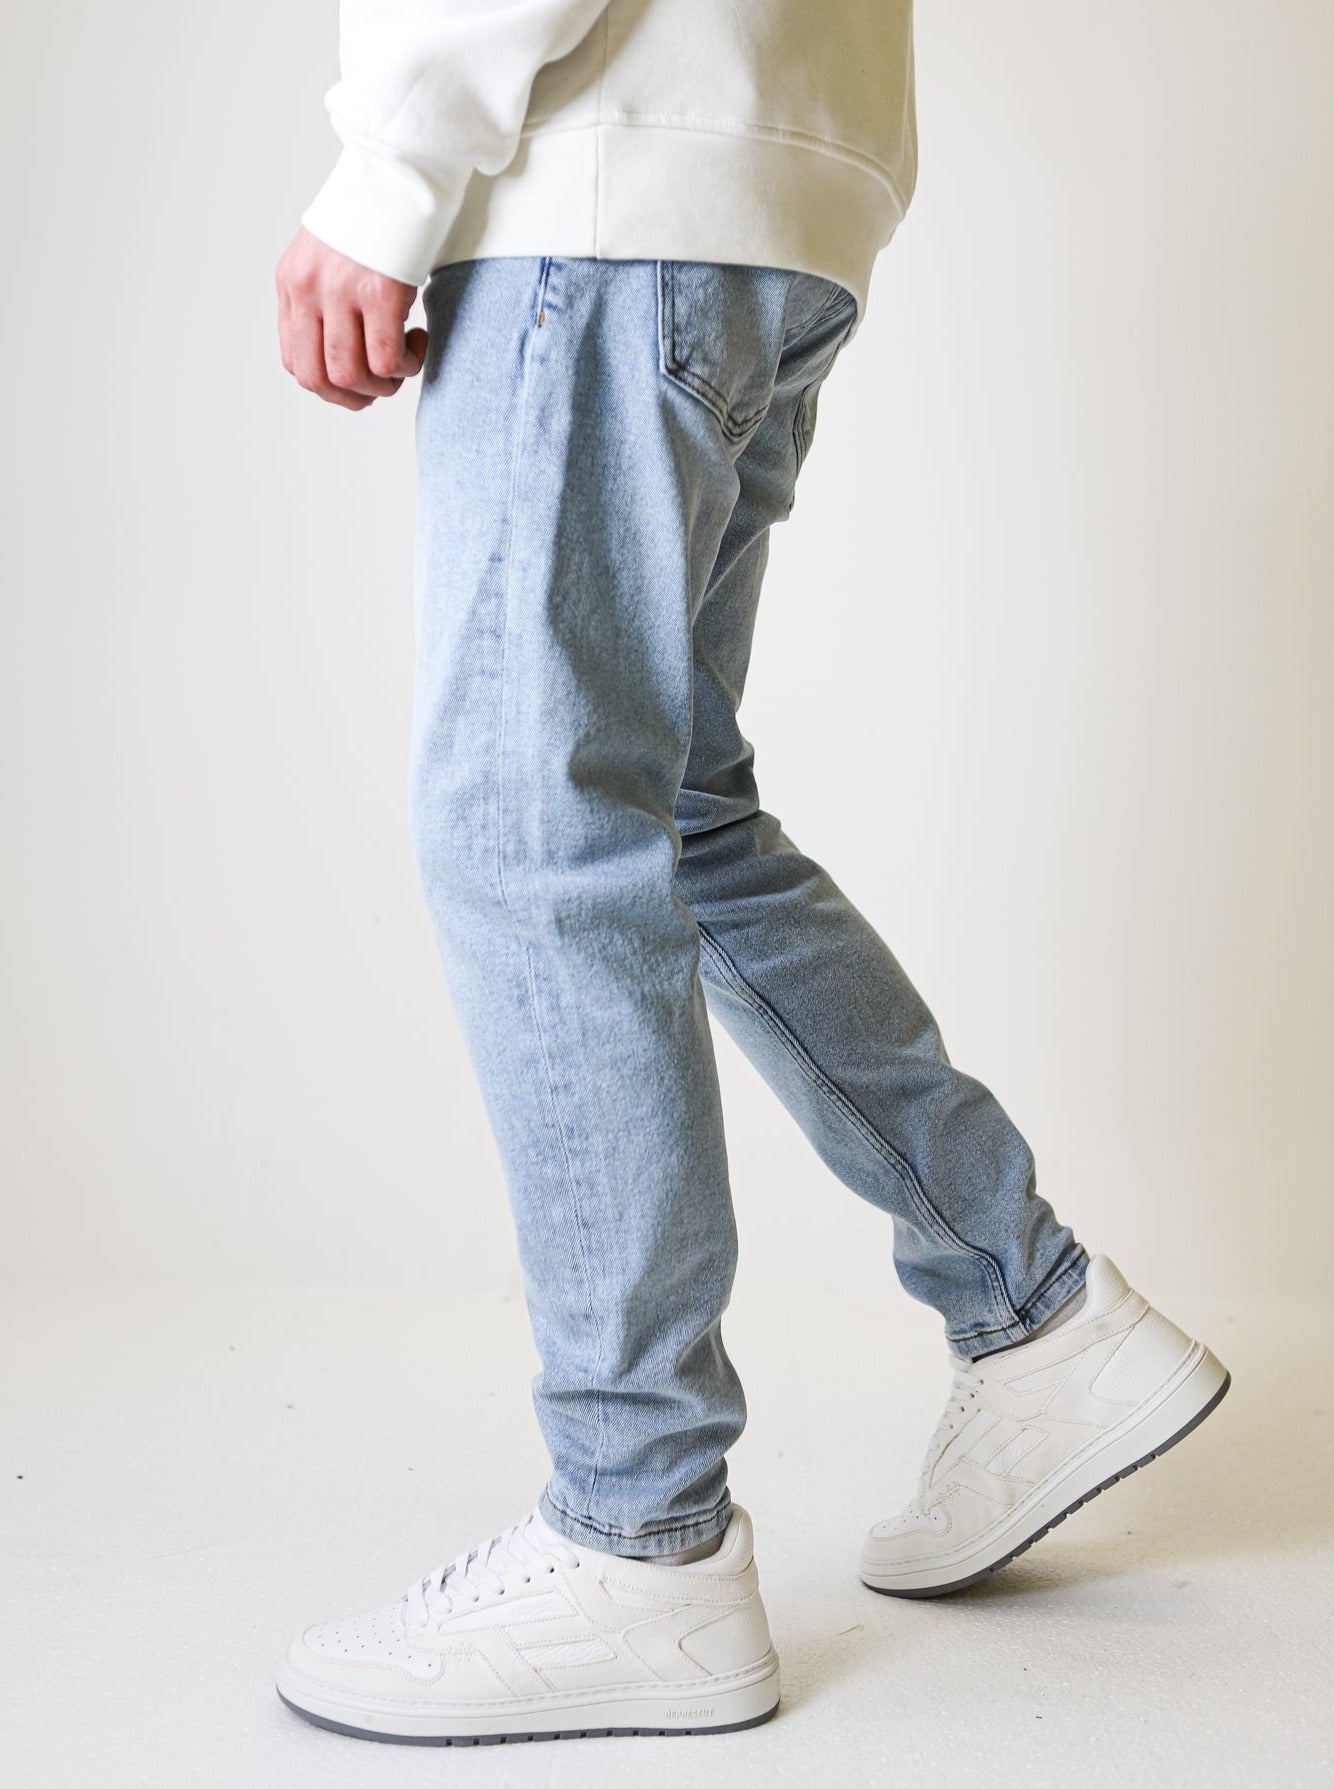 Premium Basic Light Blue Jeans - UNEFFECTED STUDIOS® - JEANS - UNEFFECTED STUDIOS®